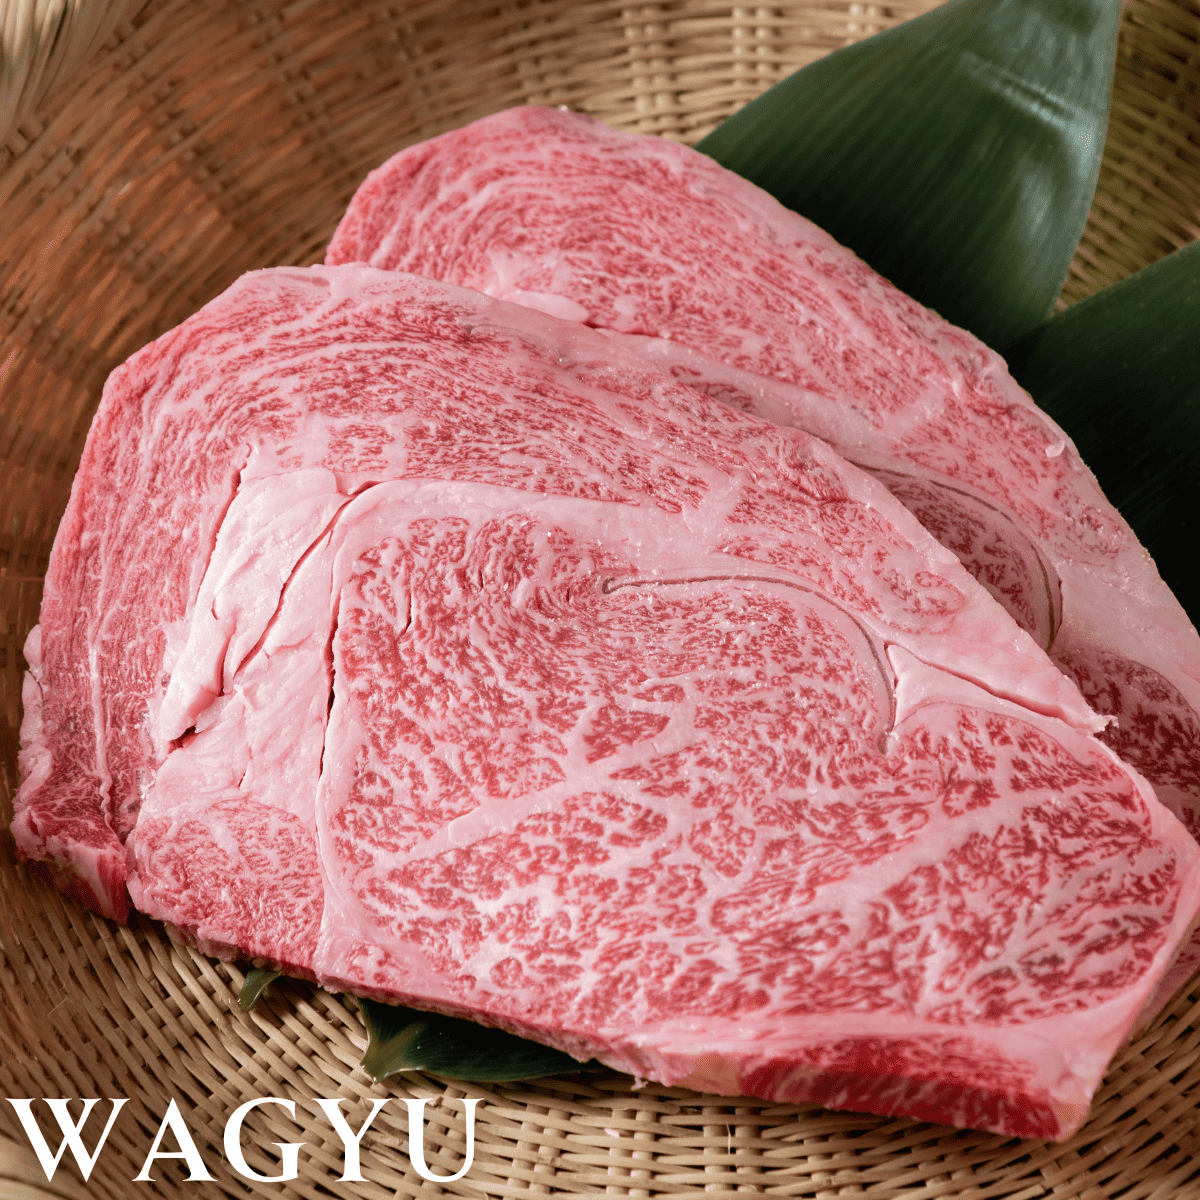 raw wagyu steak